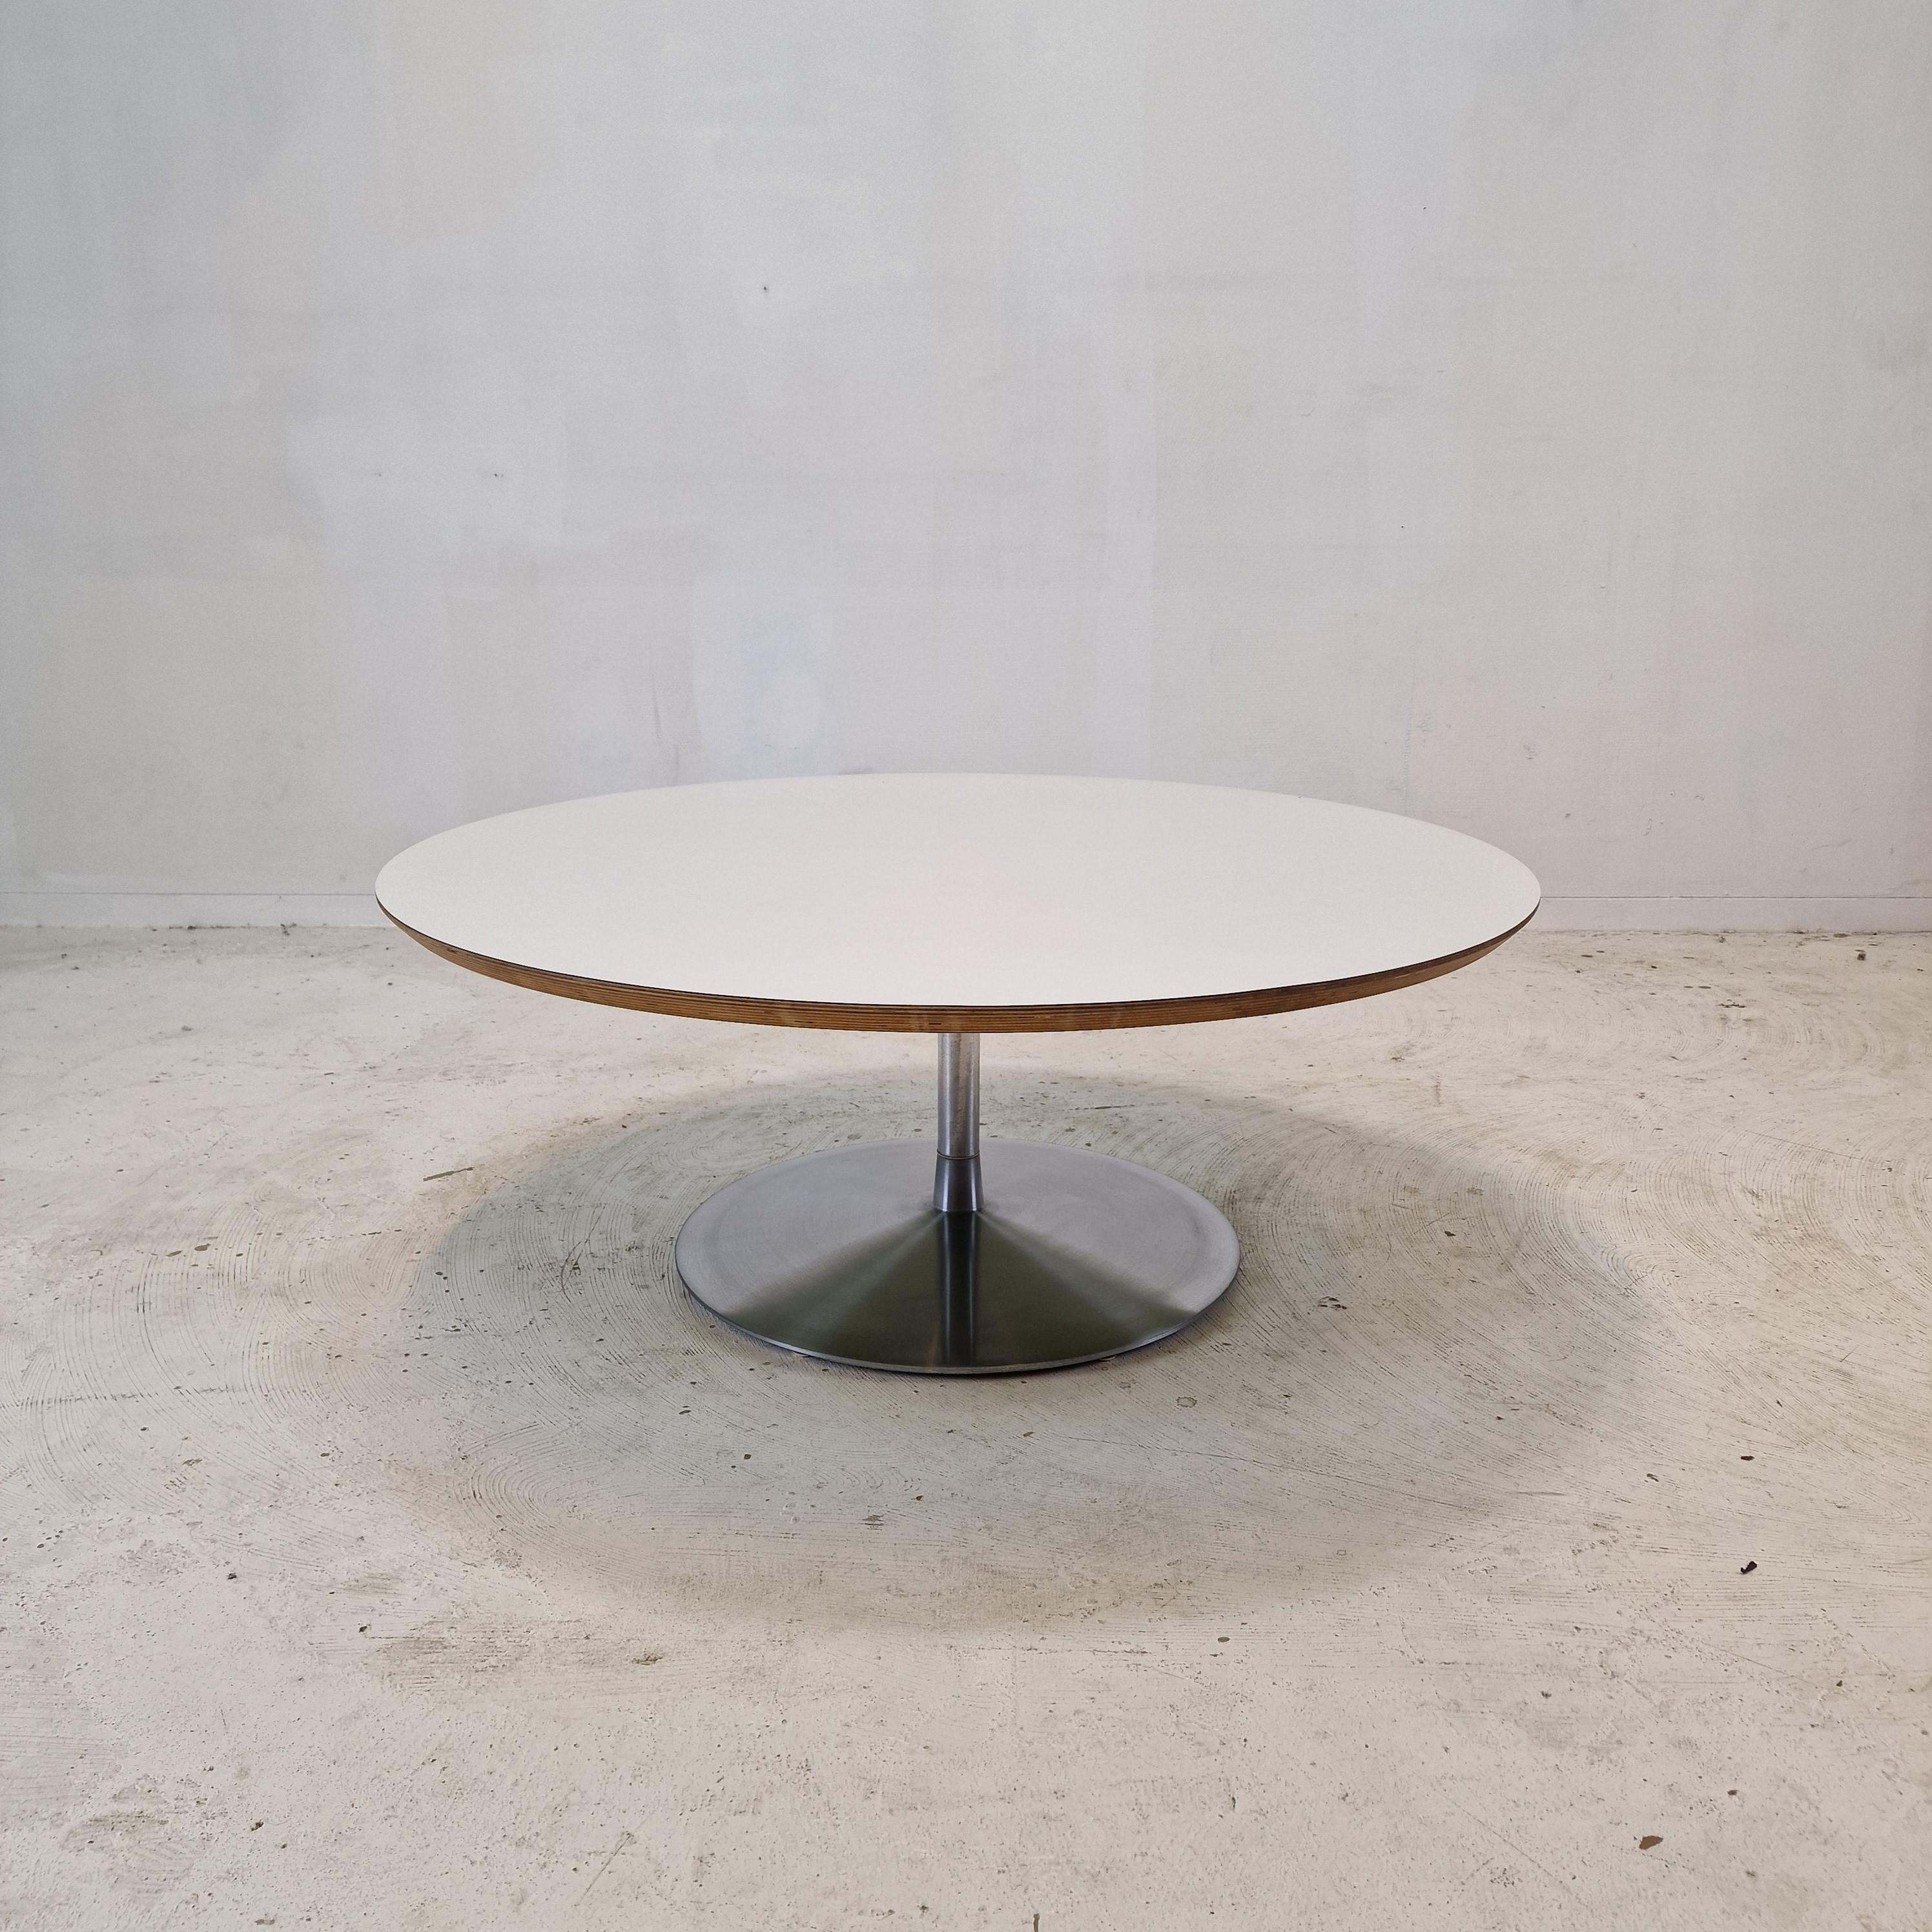 Sehr schöner runder Couchtisch, entworfen von Pierre Paulin in den 1960er Jahren. 
Dieser besondere Tisch ist Ende der 60er Jahre hergestellt worden.

Der Name des Tisches ist 